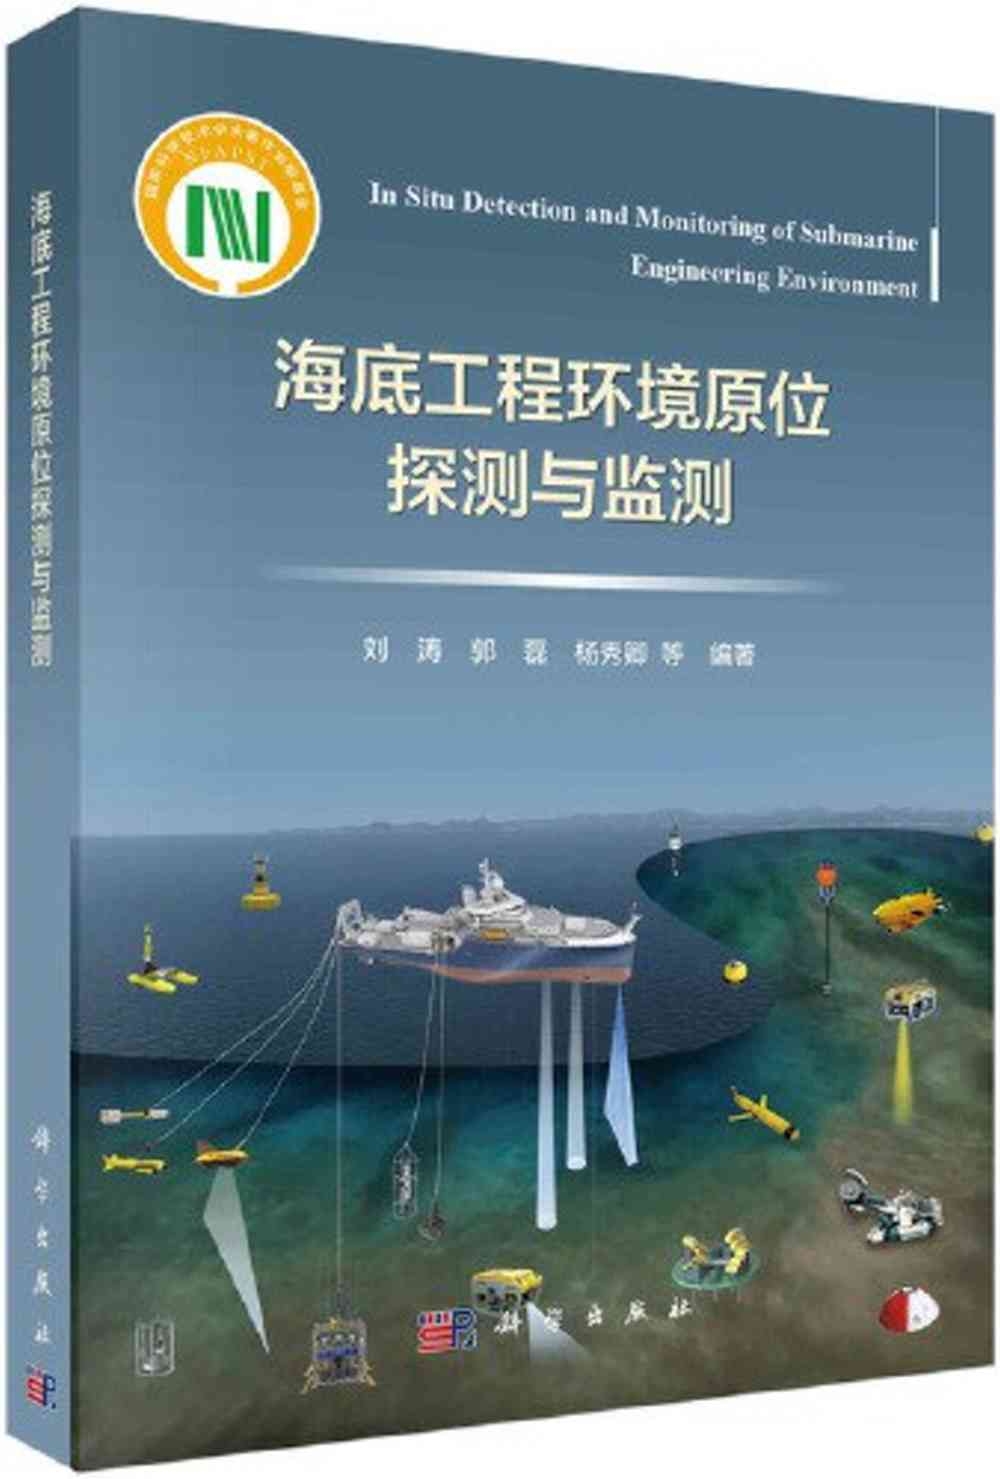 海底工程環境原位探測與監測